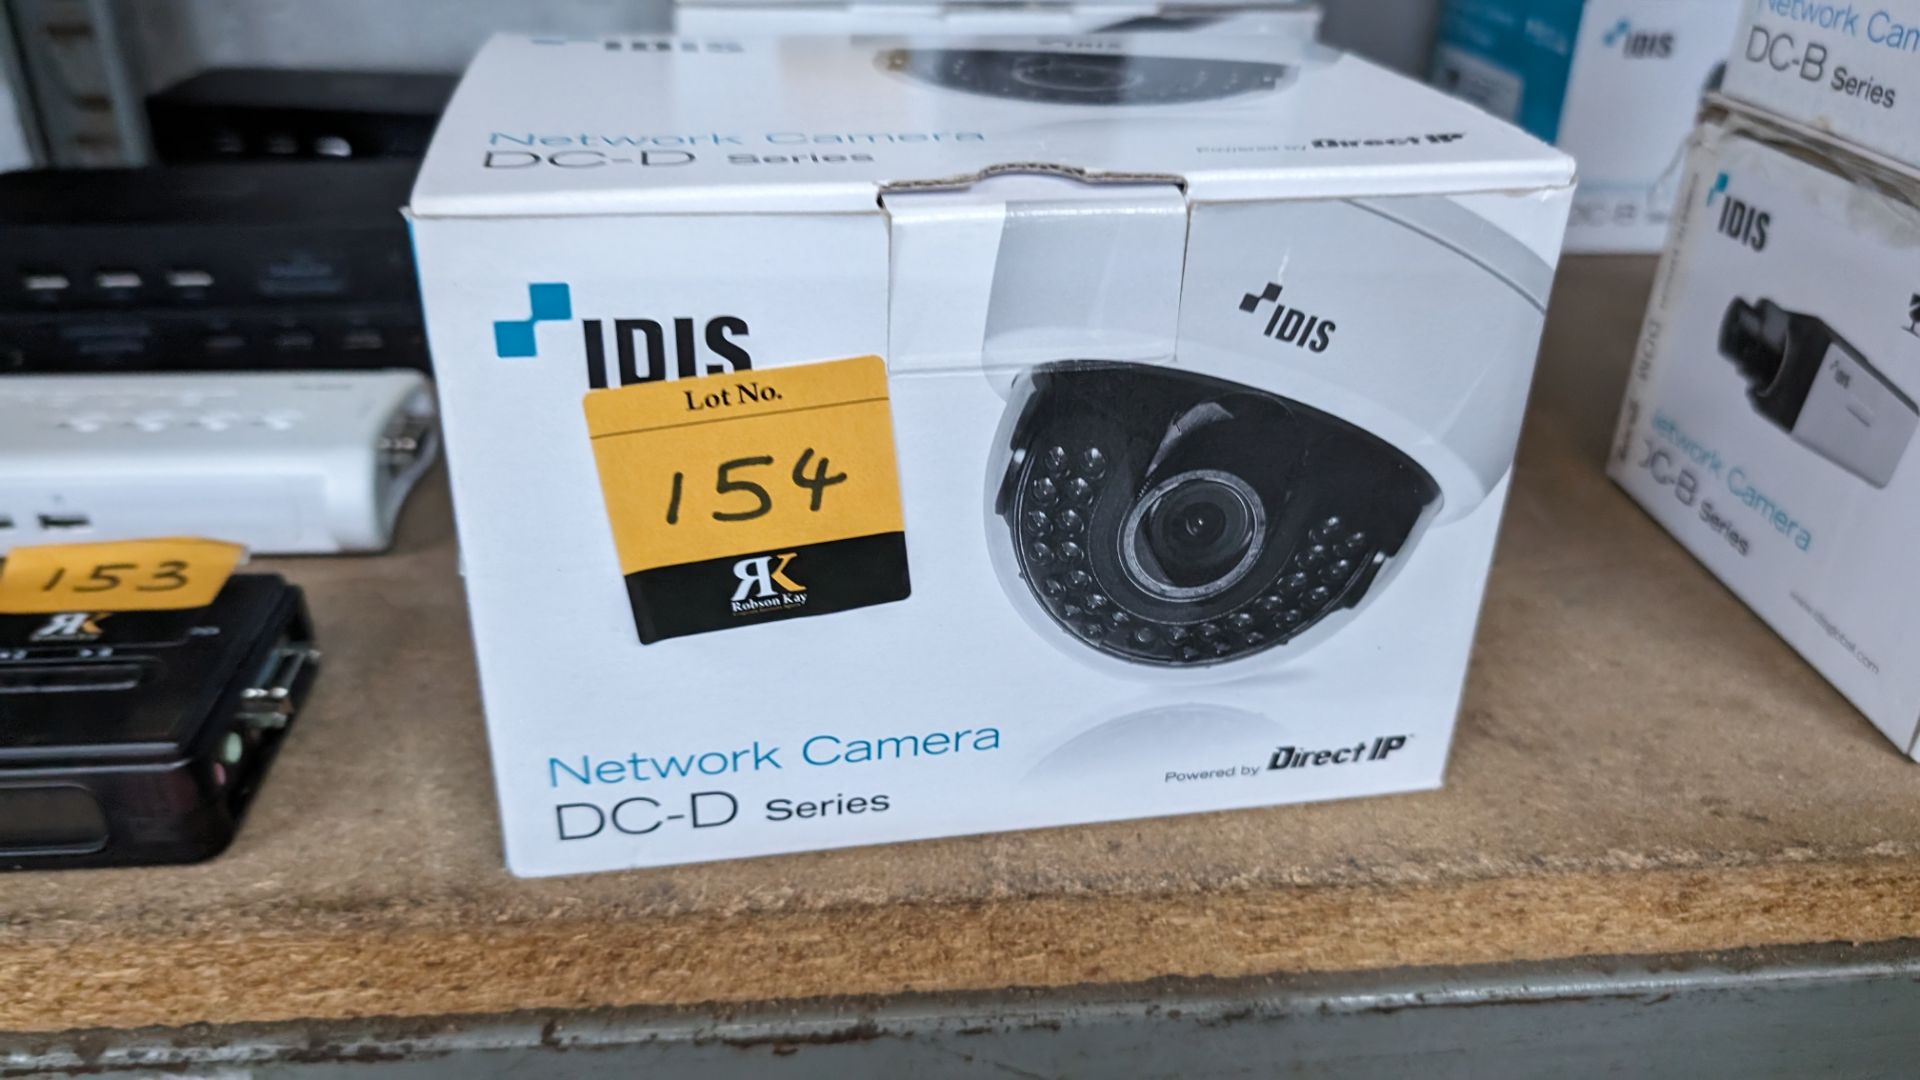 Idis network camera model DC-D2233